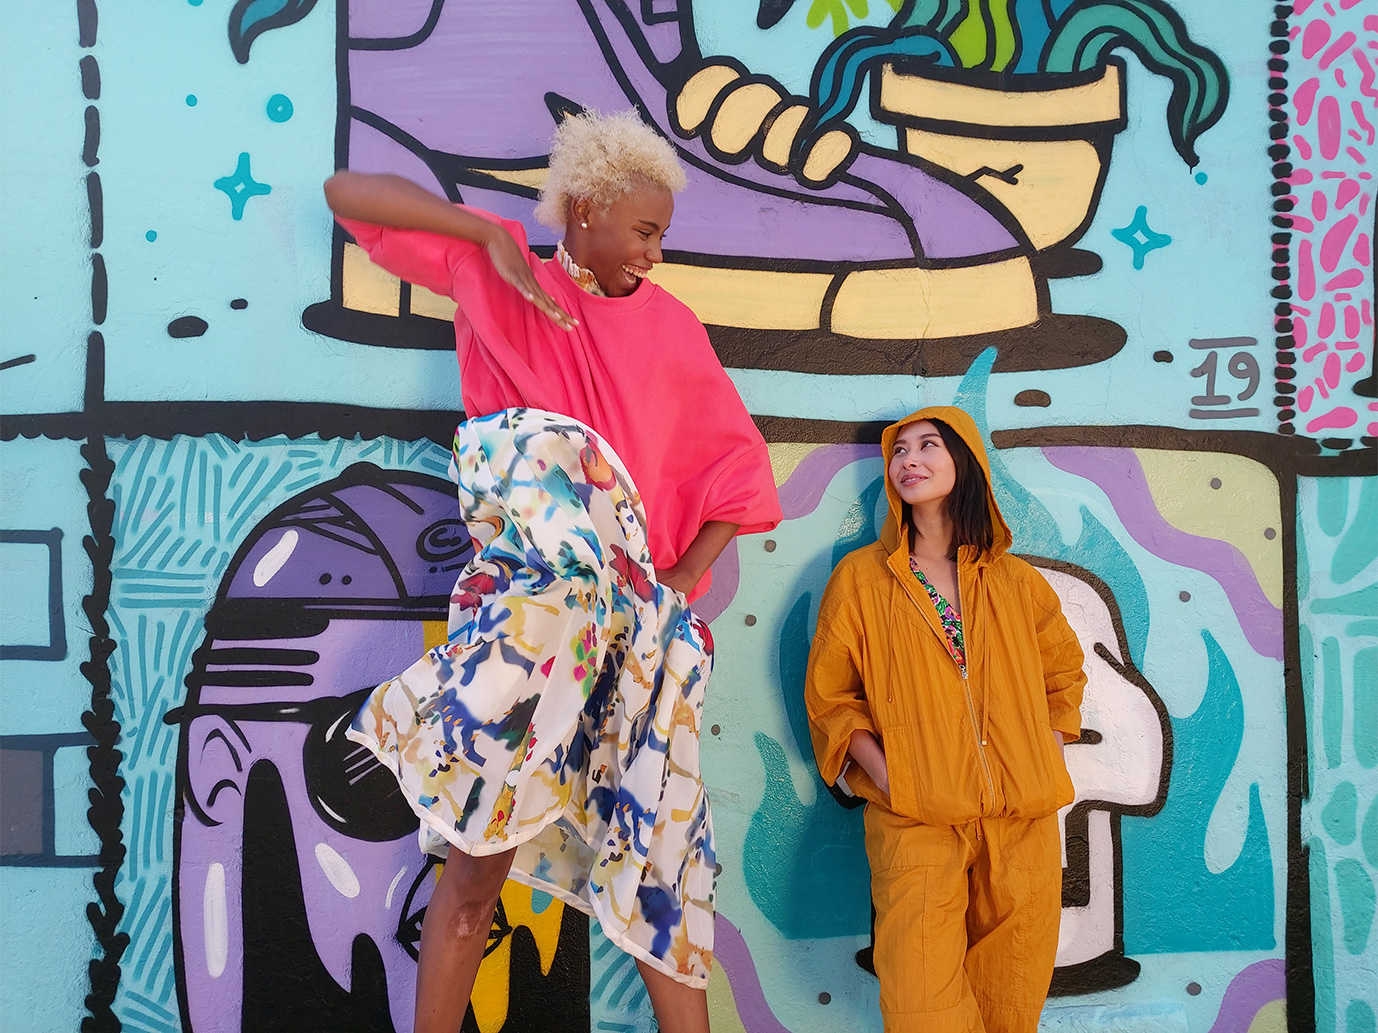 Photo capturÃ©e par l'objectif grand angle du Galaxy A80 composÃ© de deux femmes, l'une haute et l'autre courte, devant un mur de graffitis.